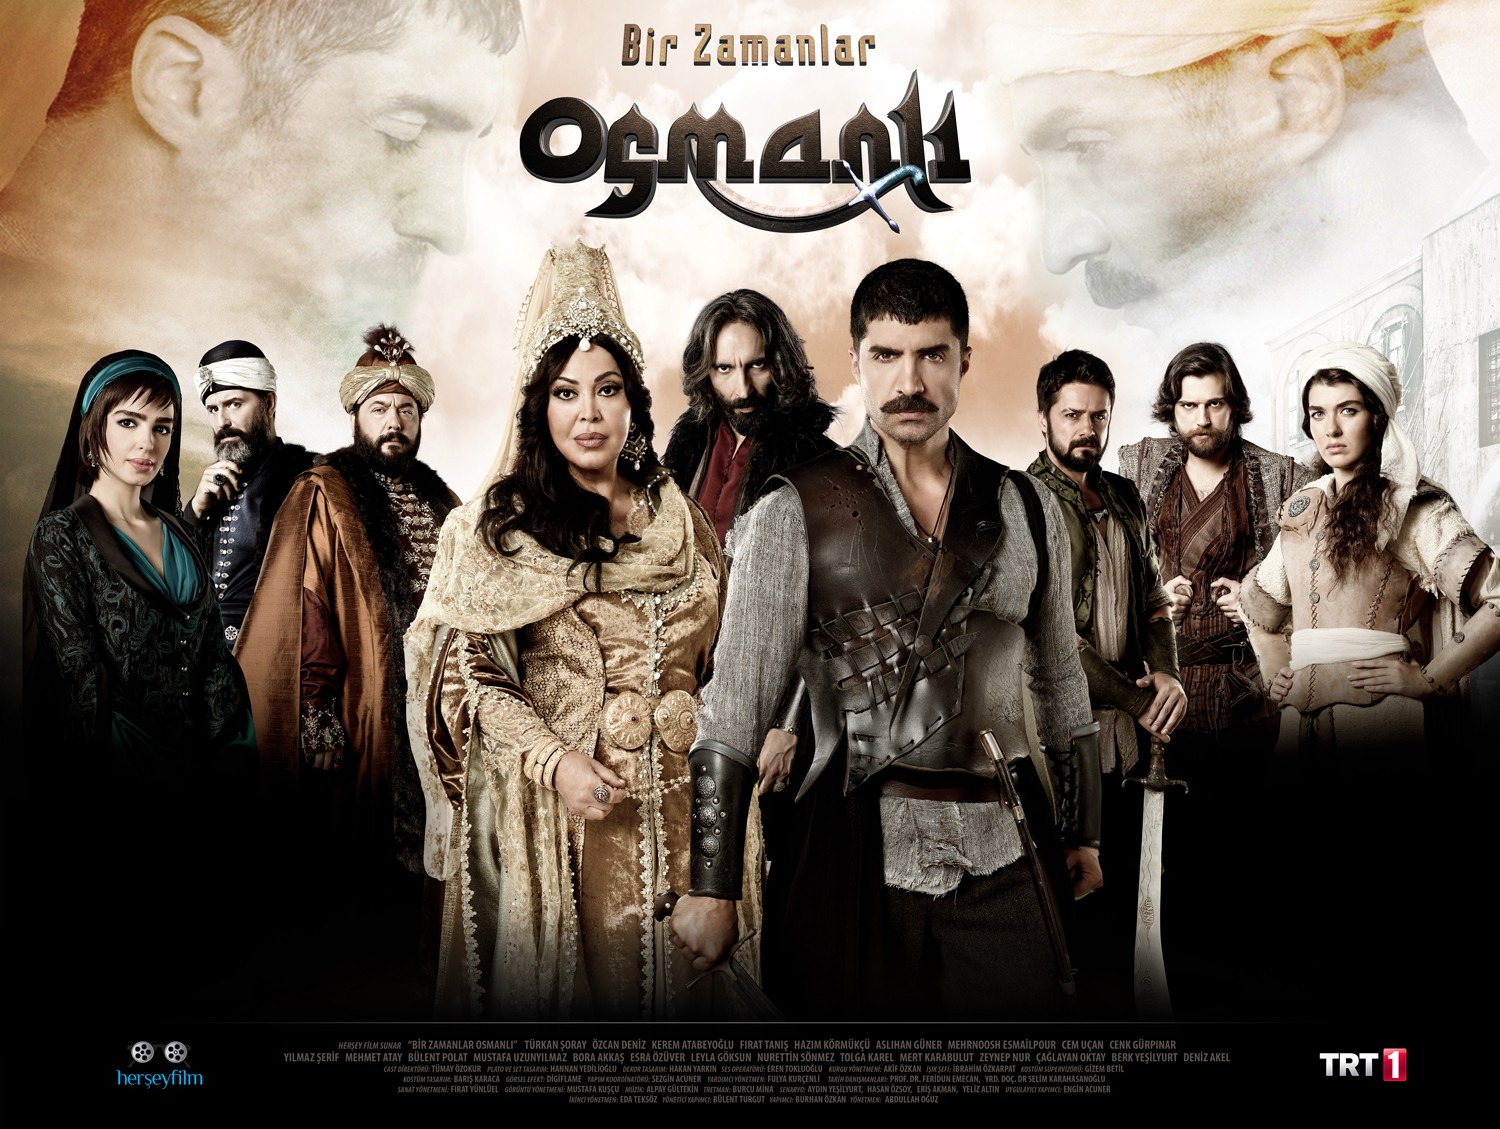 Extra Large TV Poster Image for Bir Zamanlar Osmanli Kiyam (#12 of 26)